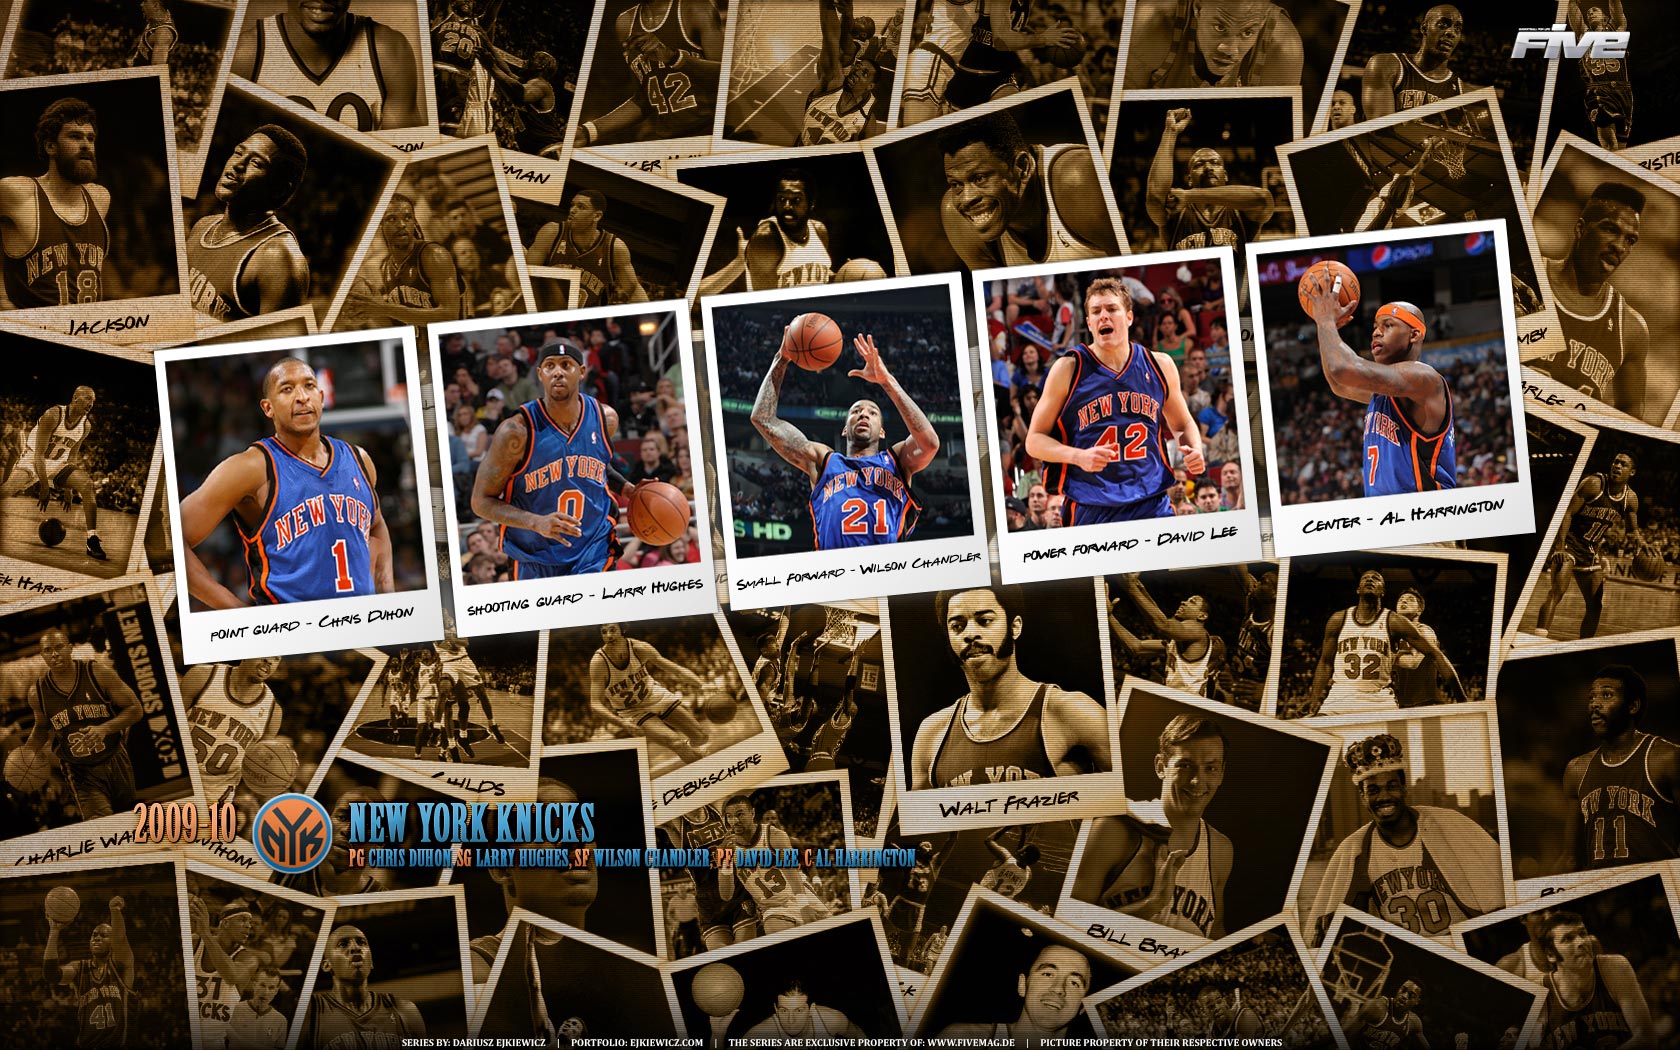 Next is widescreen wallpaper of New York Knicks 2010 starting five (Chris 